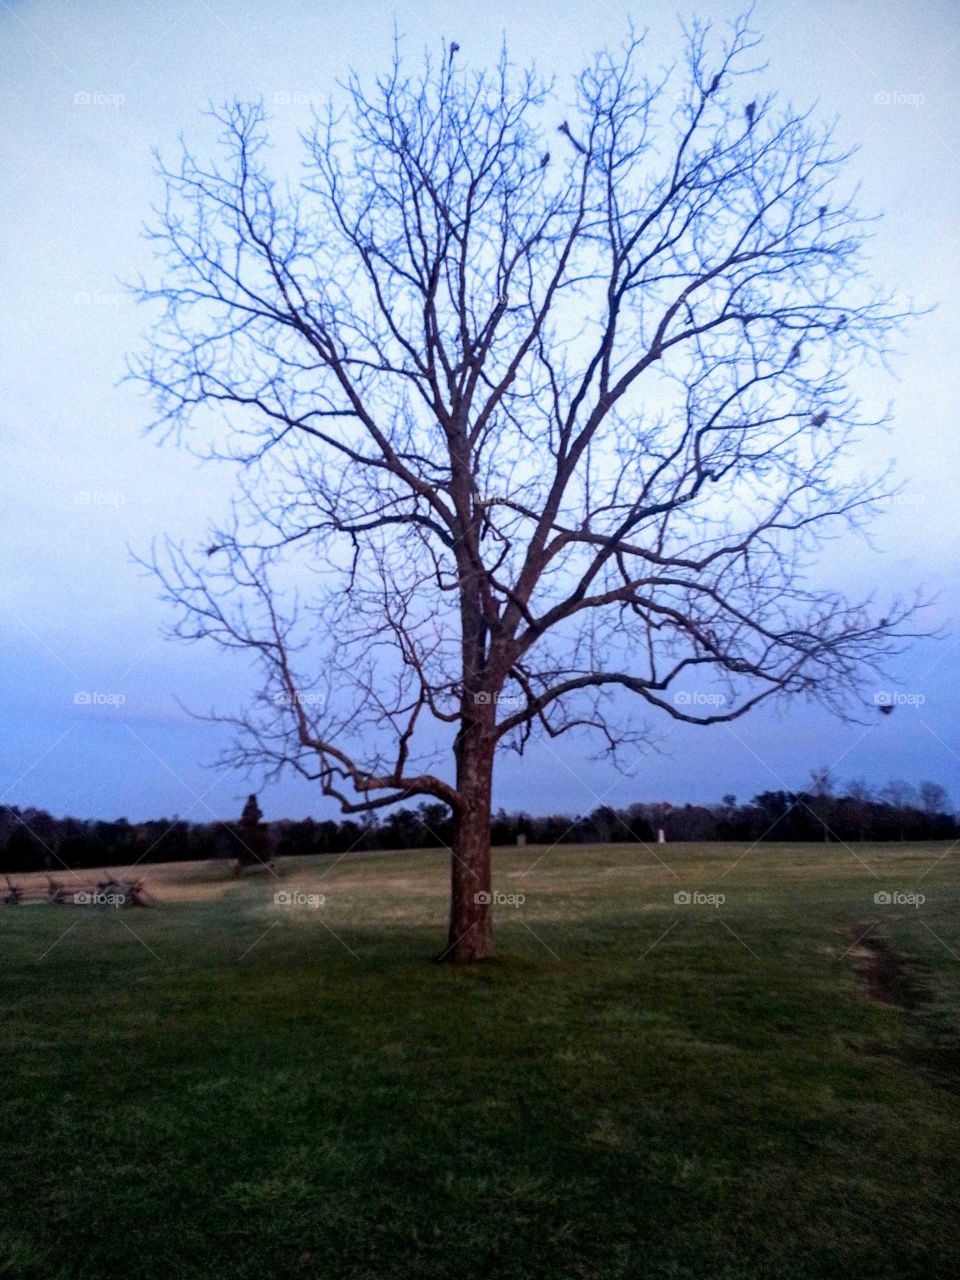 Lone Tree on a battlefield